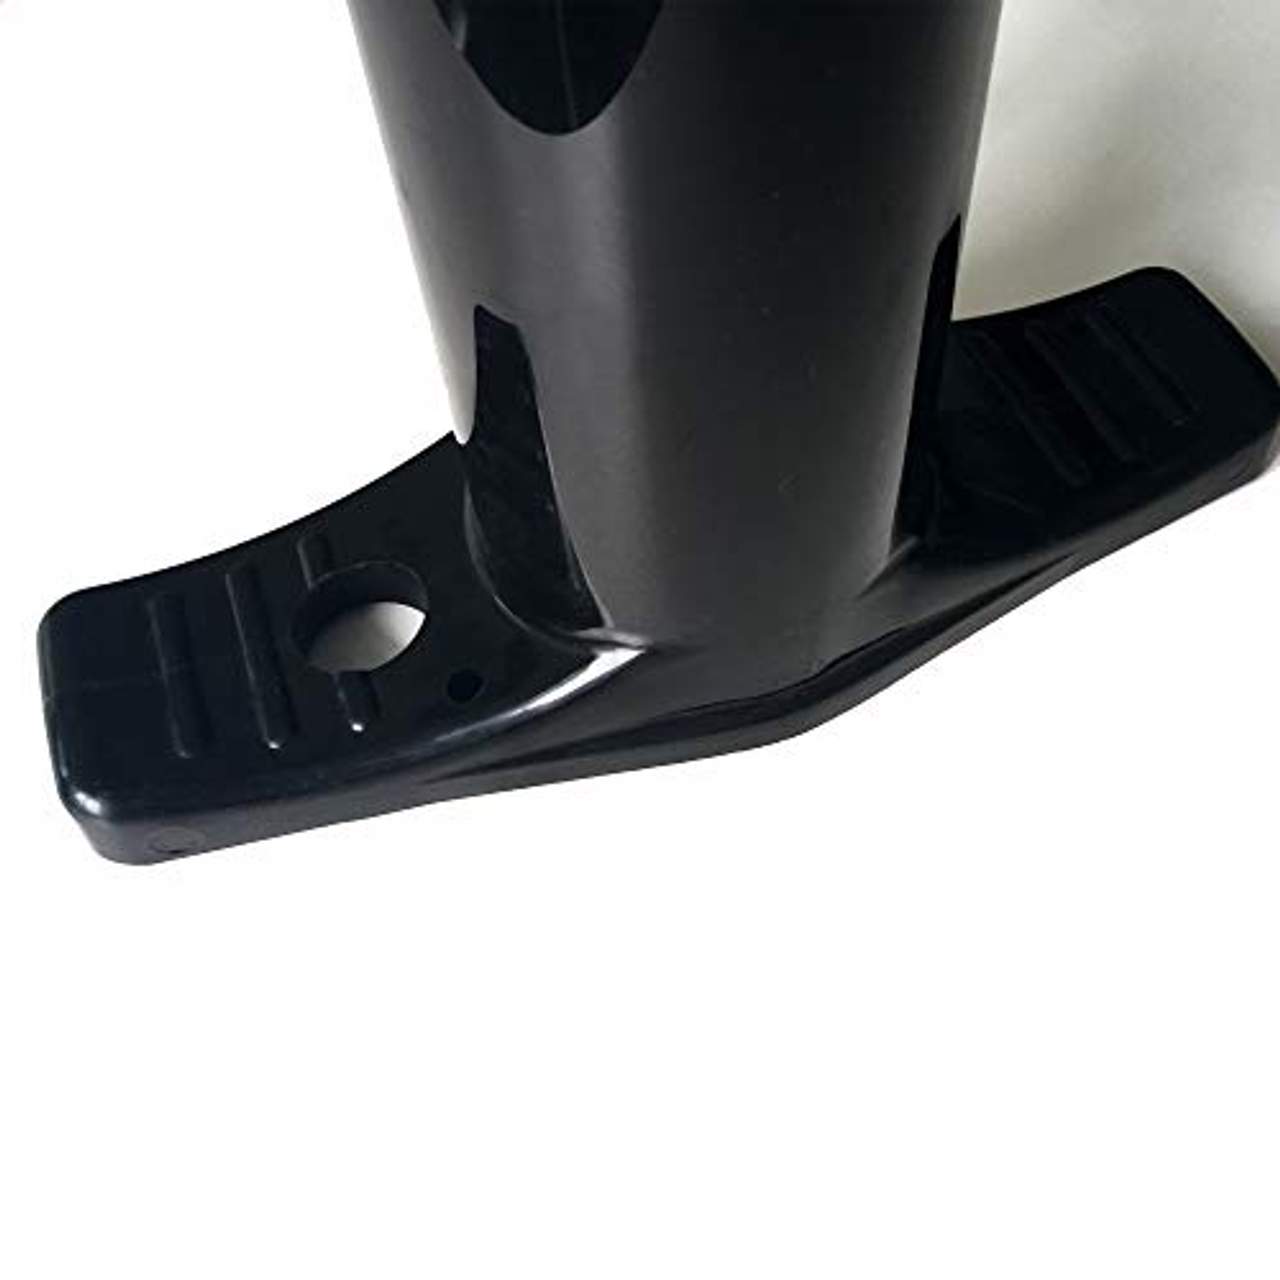 Nemaxx Premium Handpumpe für Stand Up Paddle Board mit Manometer bis 25 psi